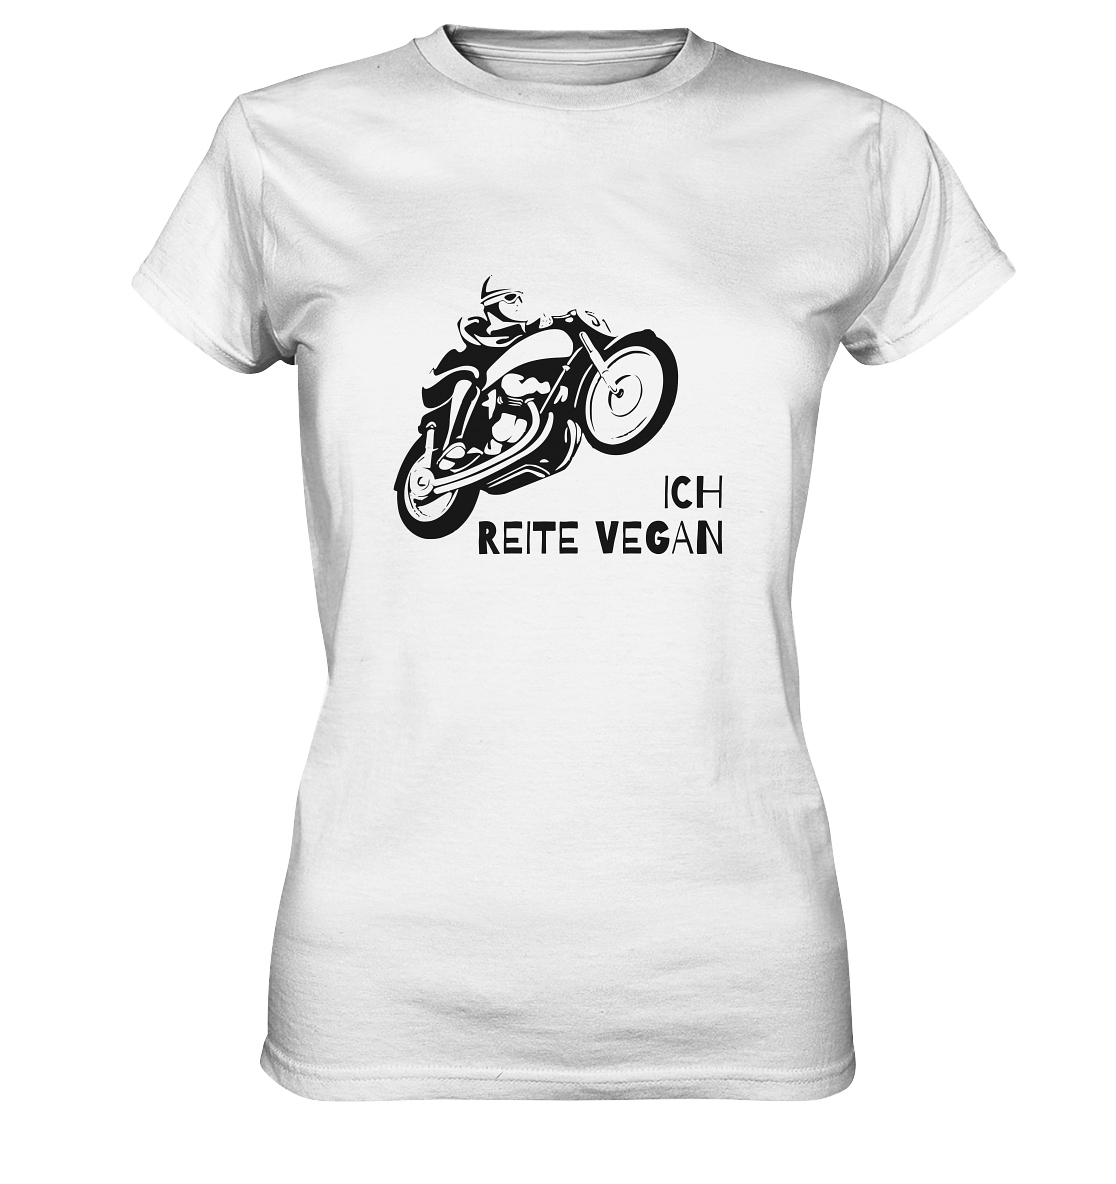 T-Shirt, Damen Rundhals, mit Aufdruck Motorrad und Spruch "Ich reite vegan", weiß